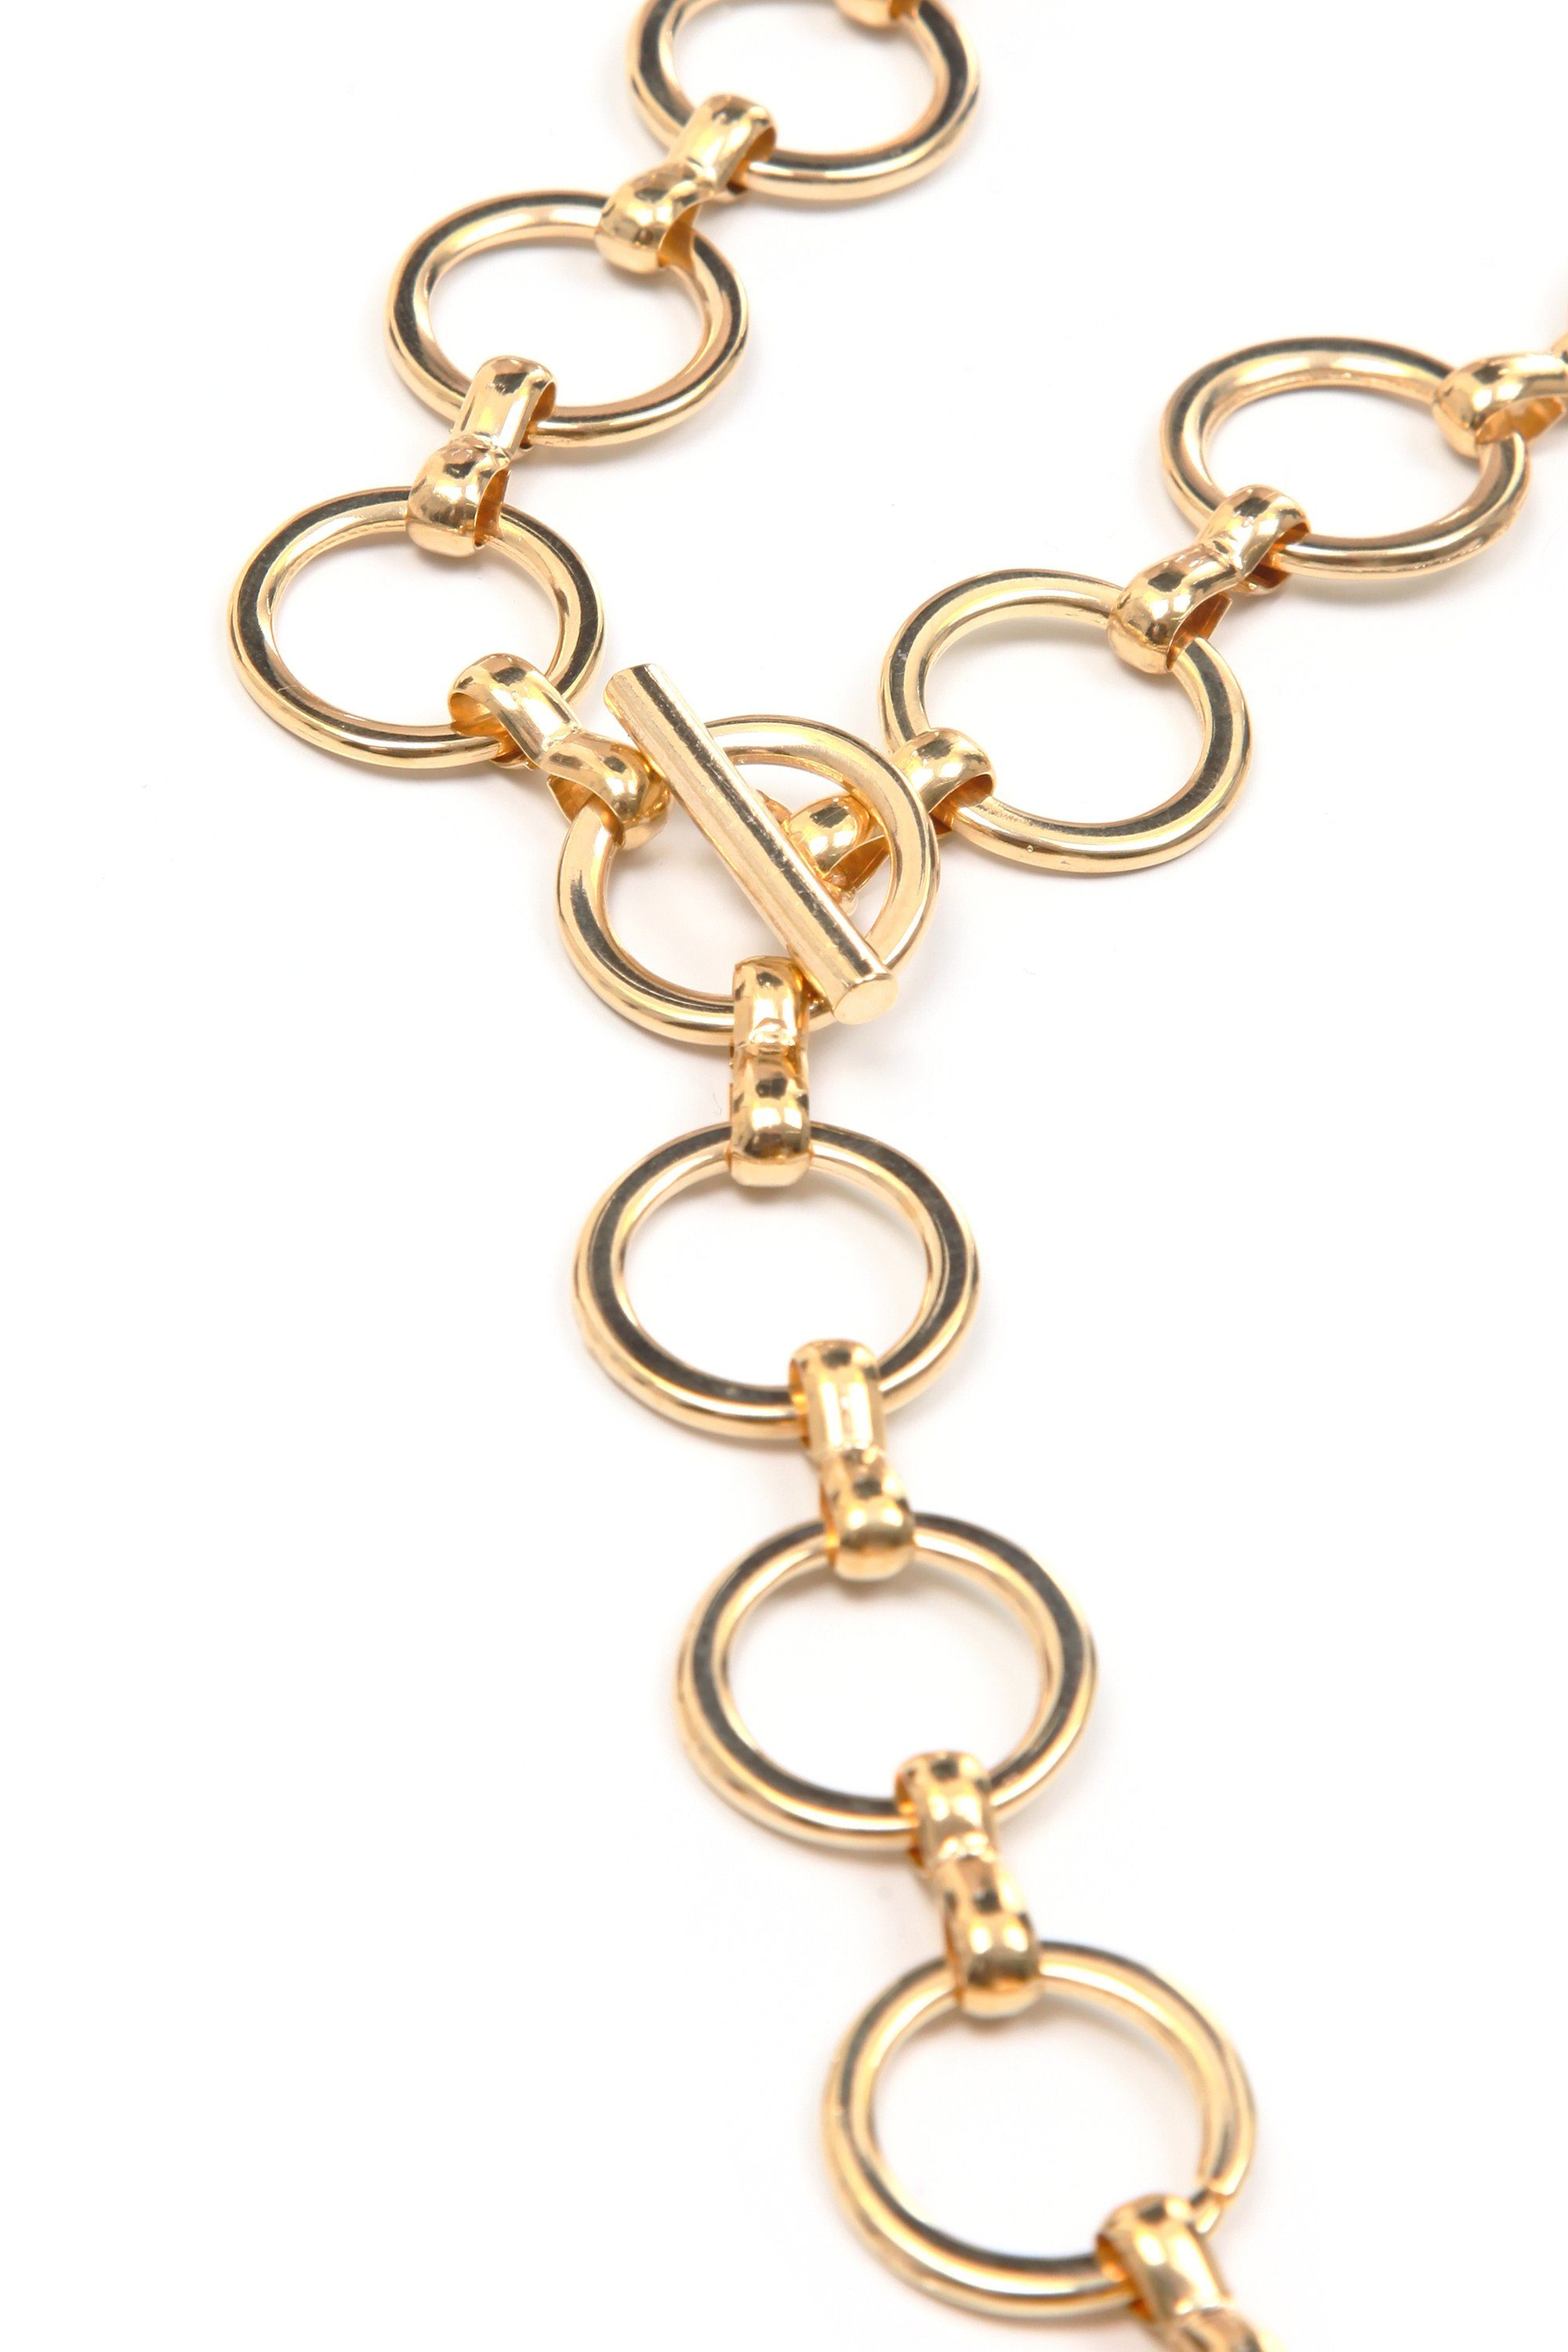 ALESSANDRO Kettengürtel gold COLLEZIONE mit kleinen Keola schlicht, runden Ringen